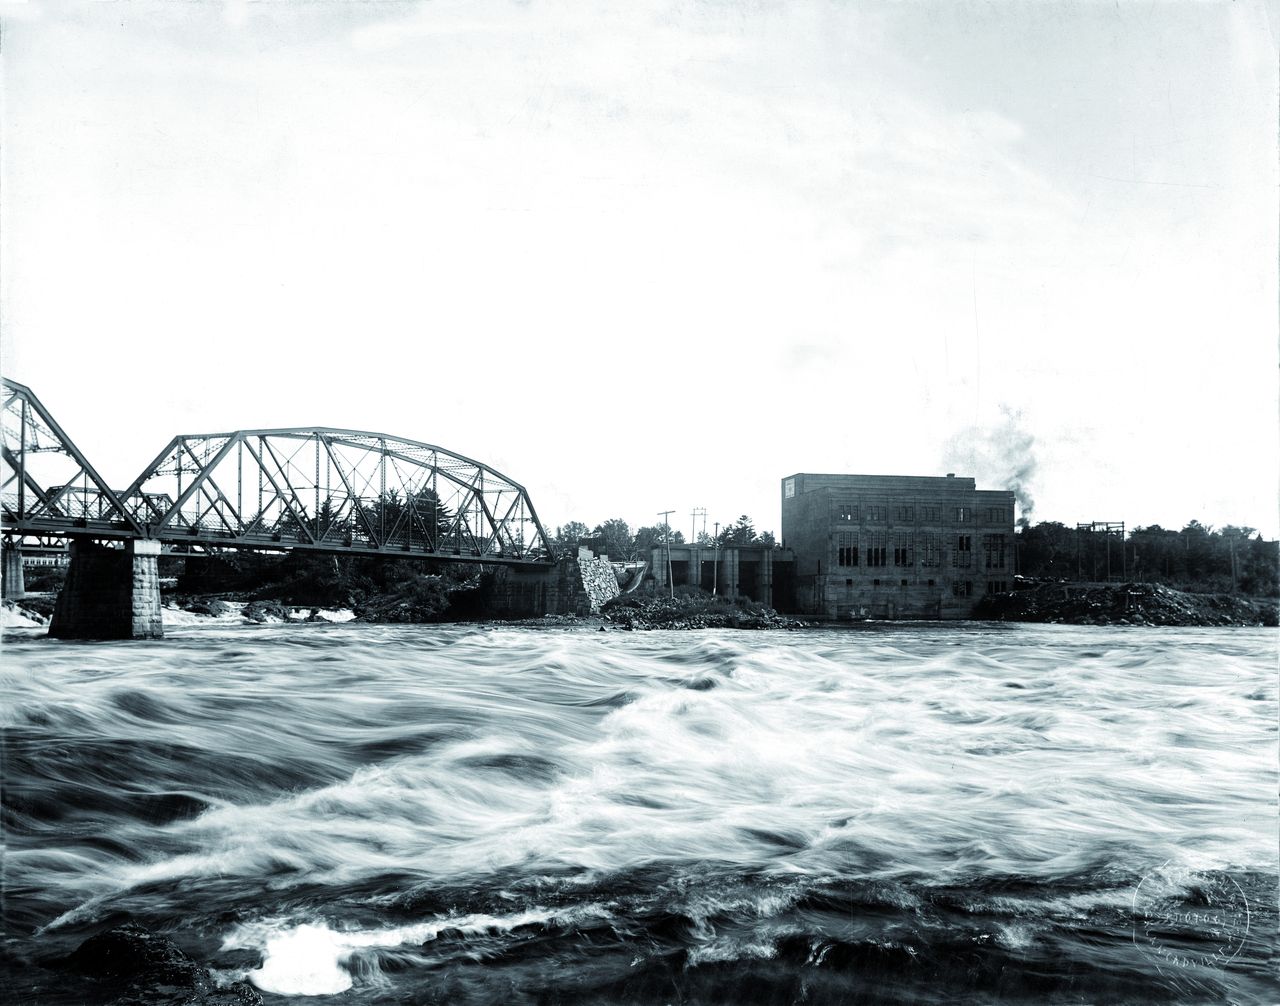 Photographie en noir et blanc de la centrale hydroélectrique de Drummondville et des deux ponts traversant la rivière Saint-François.